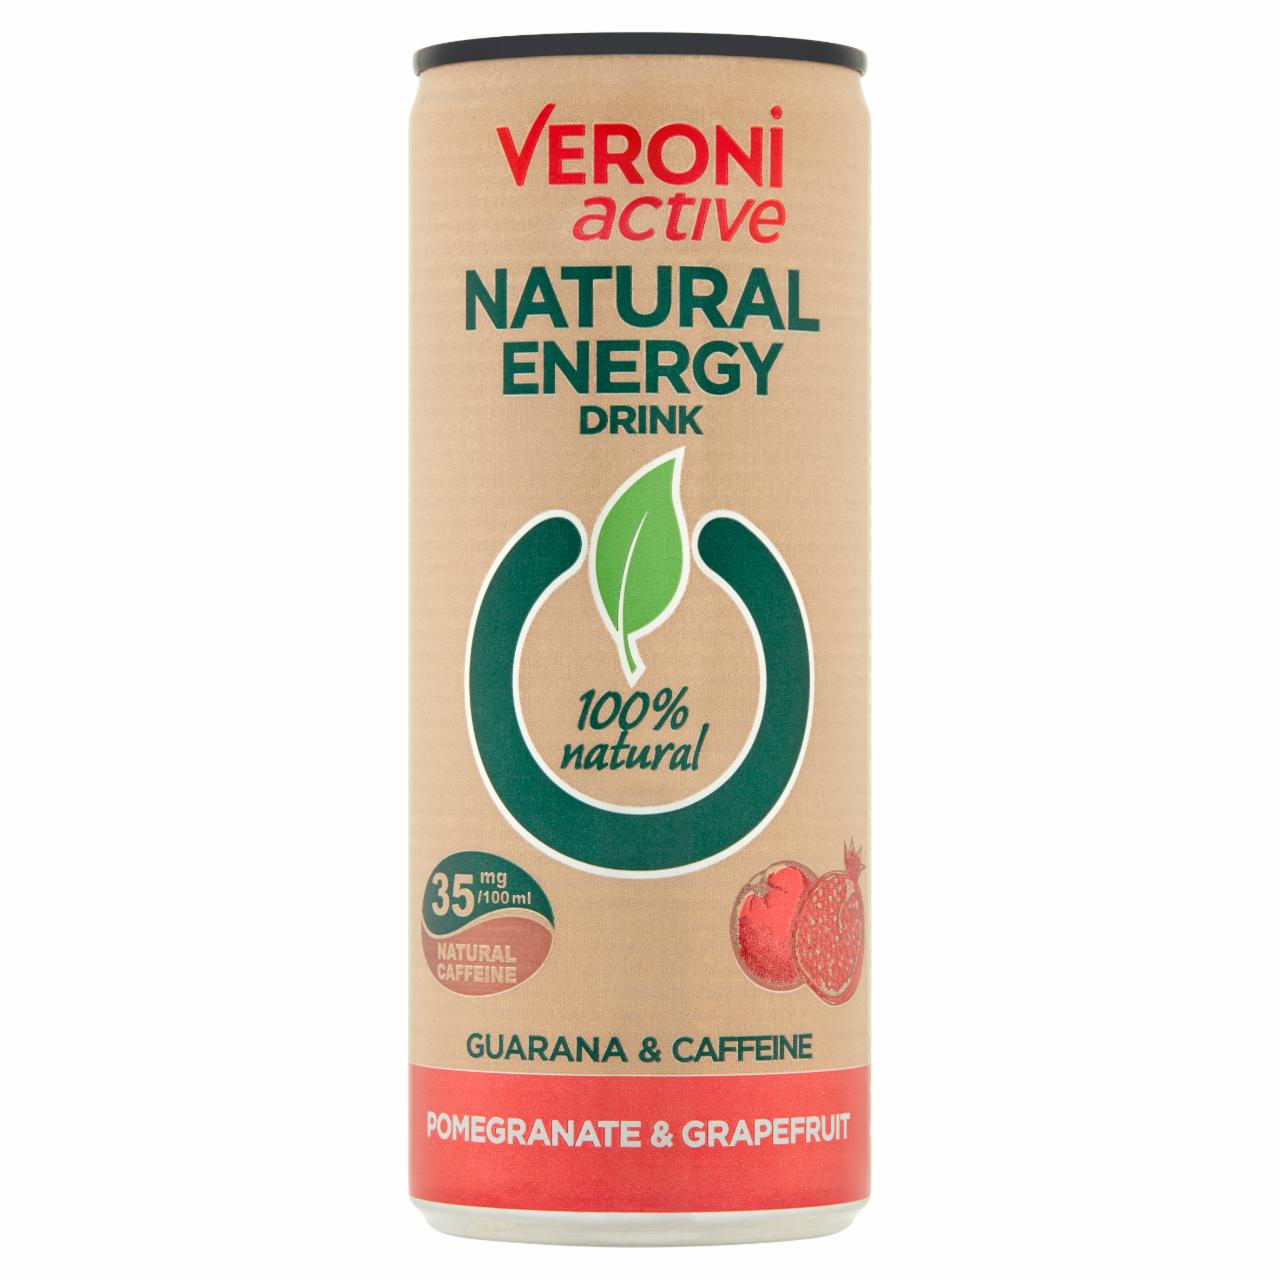 Zdjęcia - Veroni Active Natural Energy Drink Napój gazowany energetyzujący granat & grejpfrut 250 ml